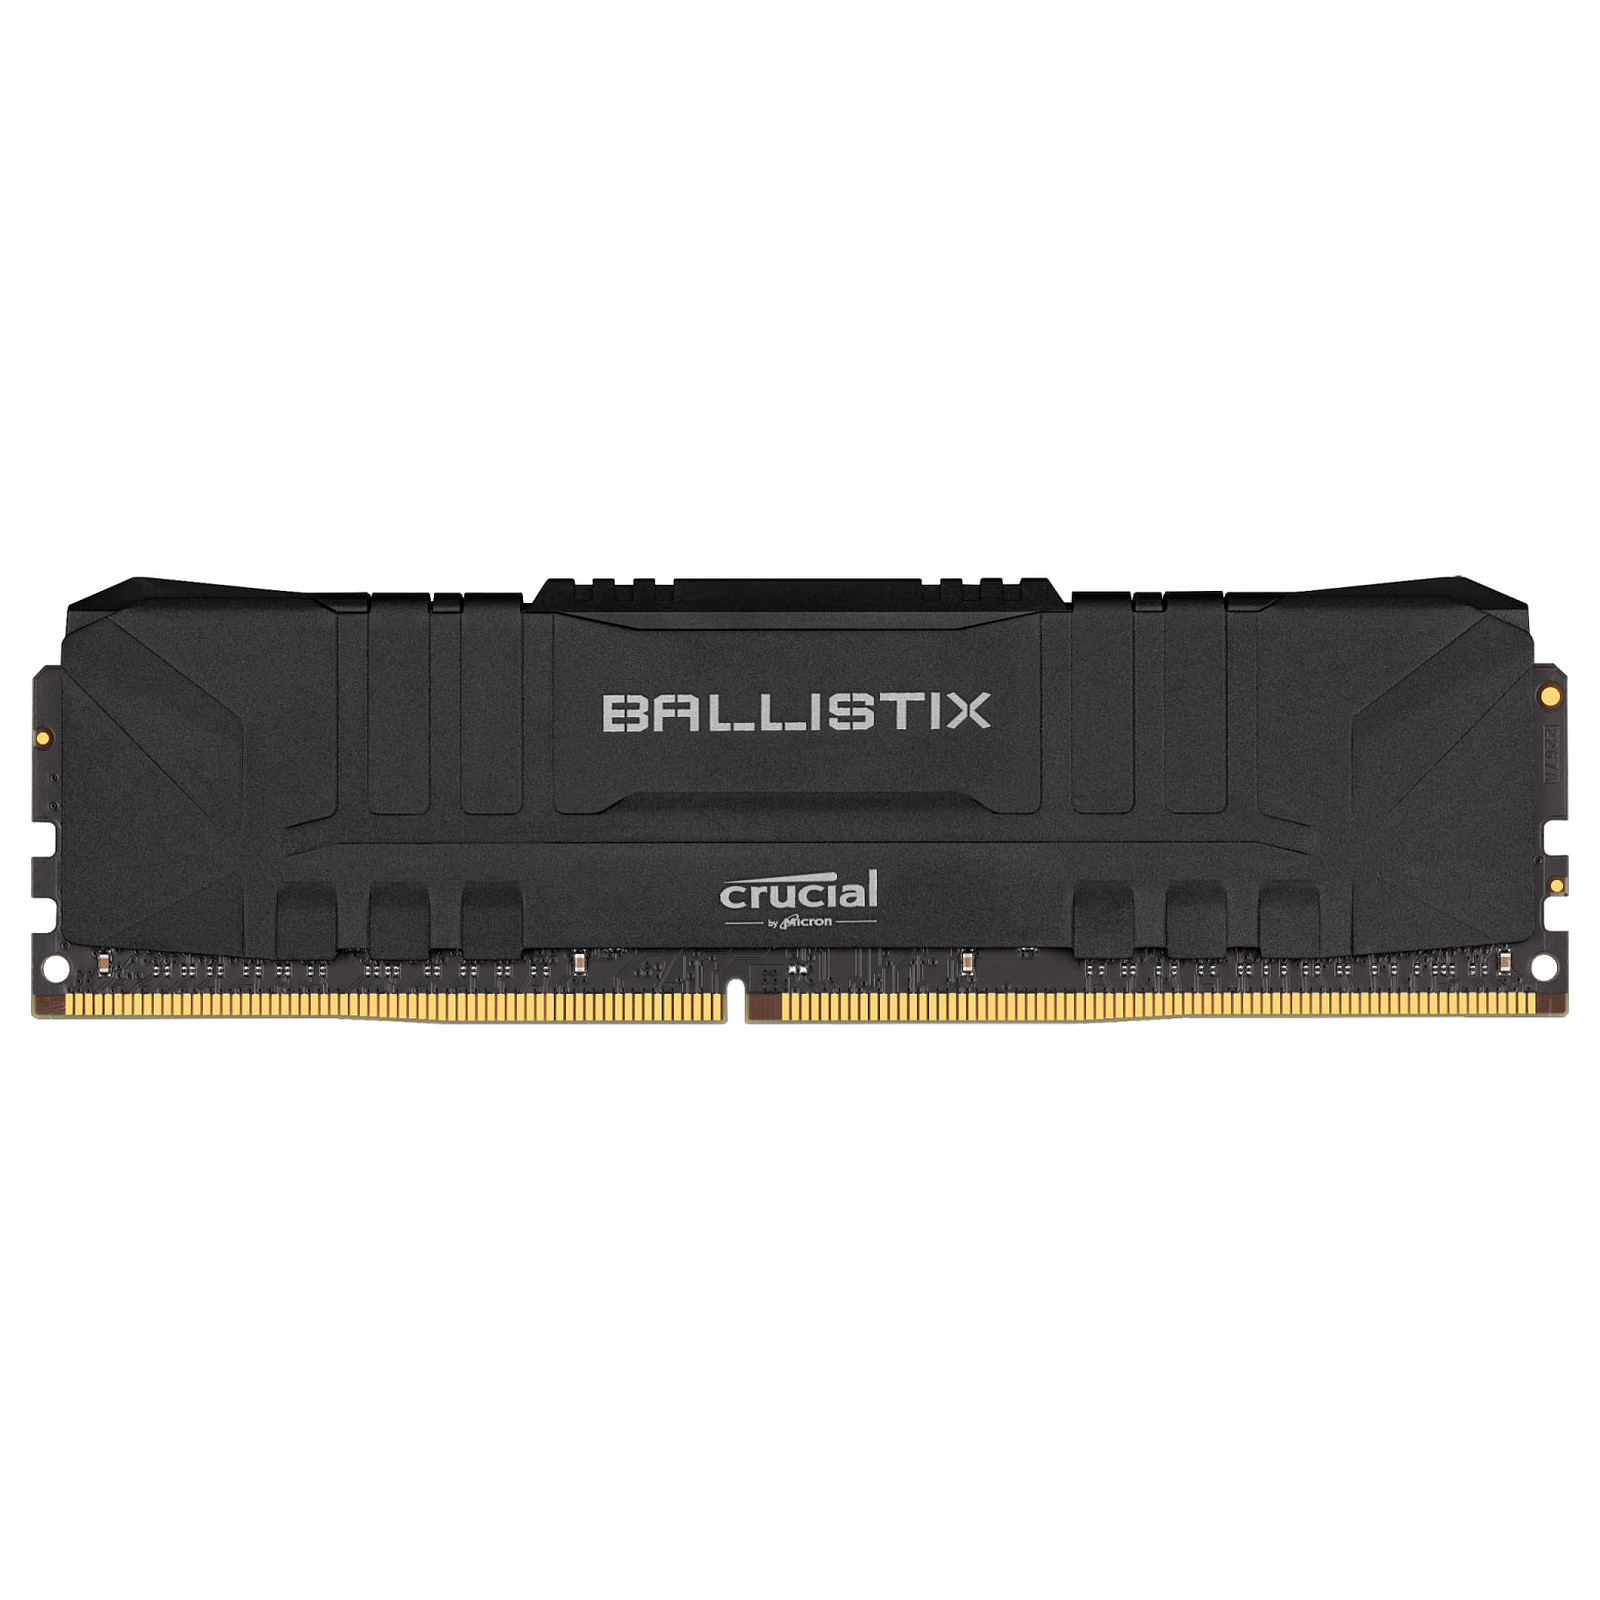 RAM BALLISTIX 8GB DDR4 3200MHZ Algérie El Assli Hi-Tech